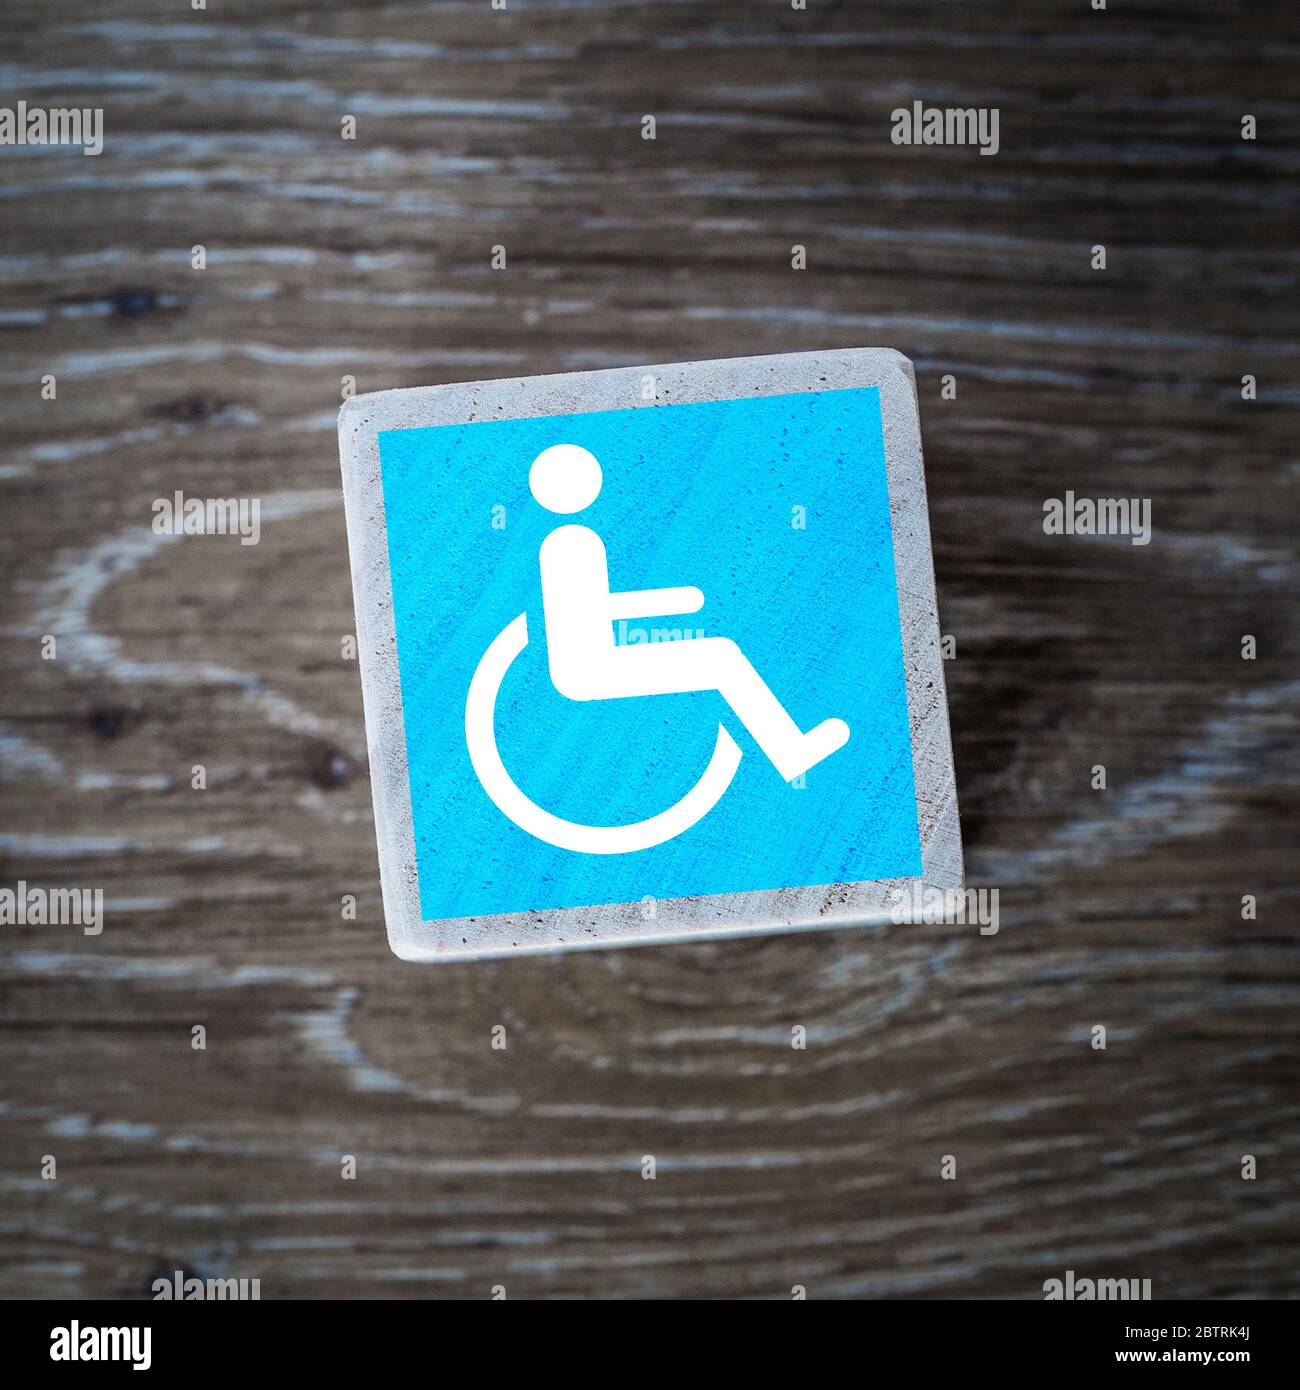 Un symbole, une icône ou un symbole bleu pour les personnes handicapées mentales et physiquement sur un bloc de bois avec un fond en bois et un espace de copie Banque D'Images